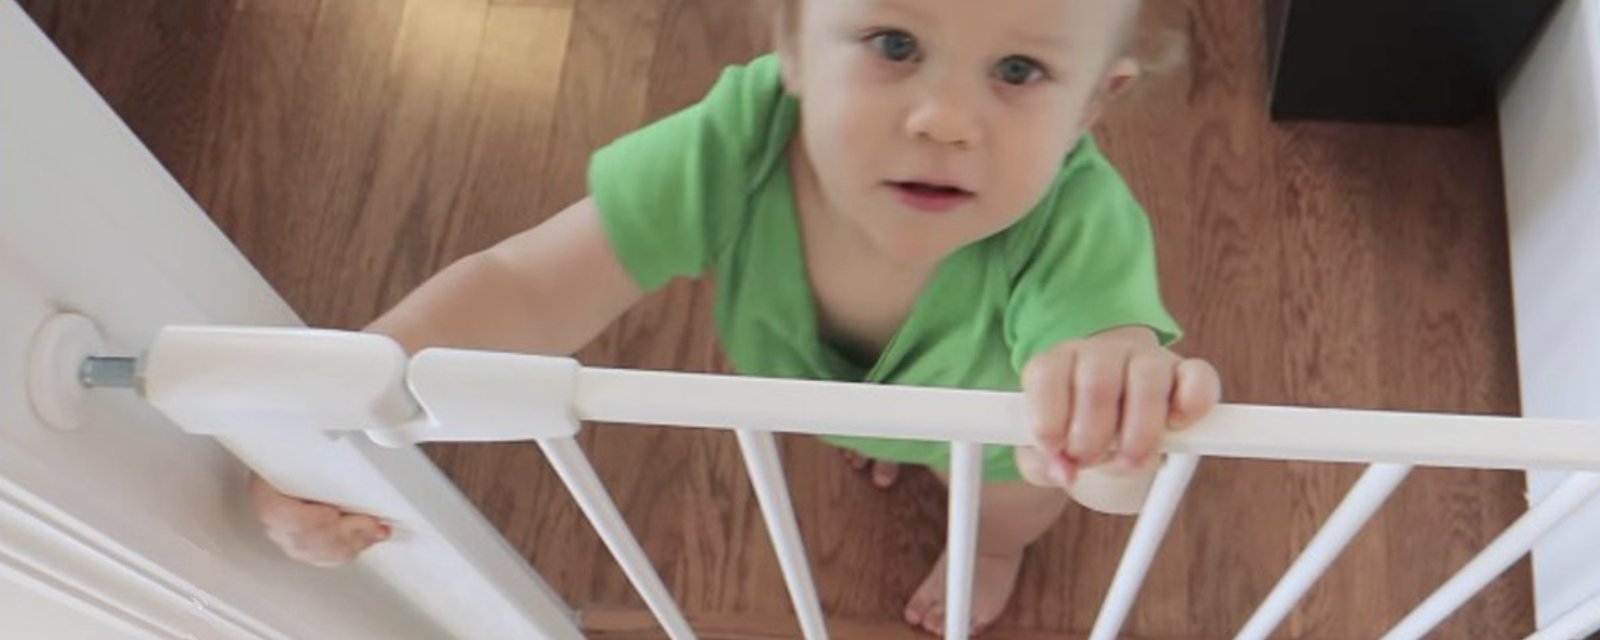 Bébé commence à marcher? Voici 12 astuces simples pour rendre votre maison sécuritaire